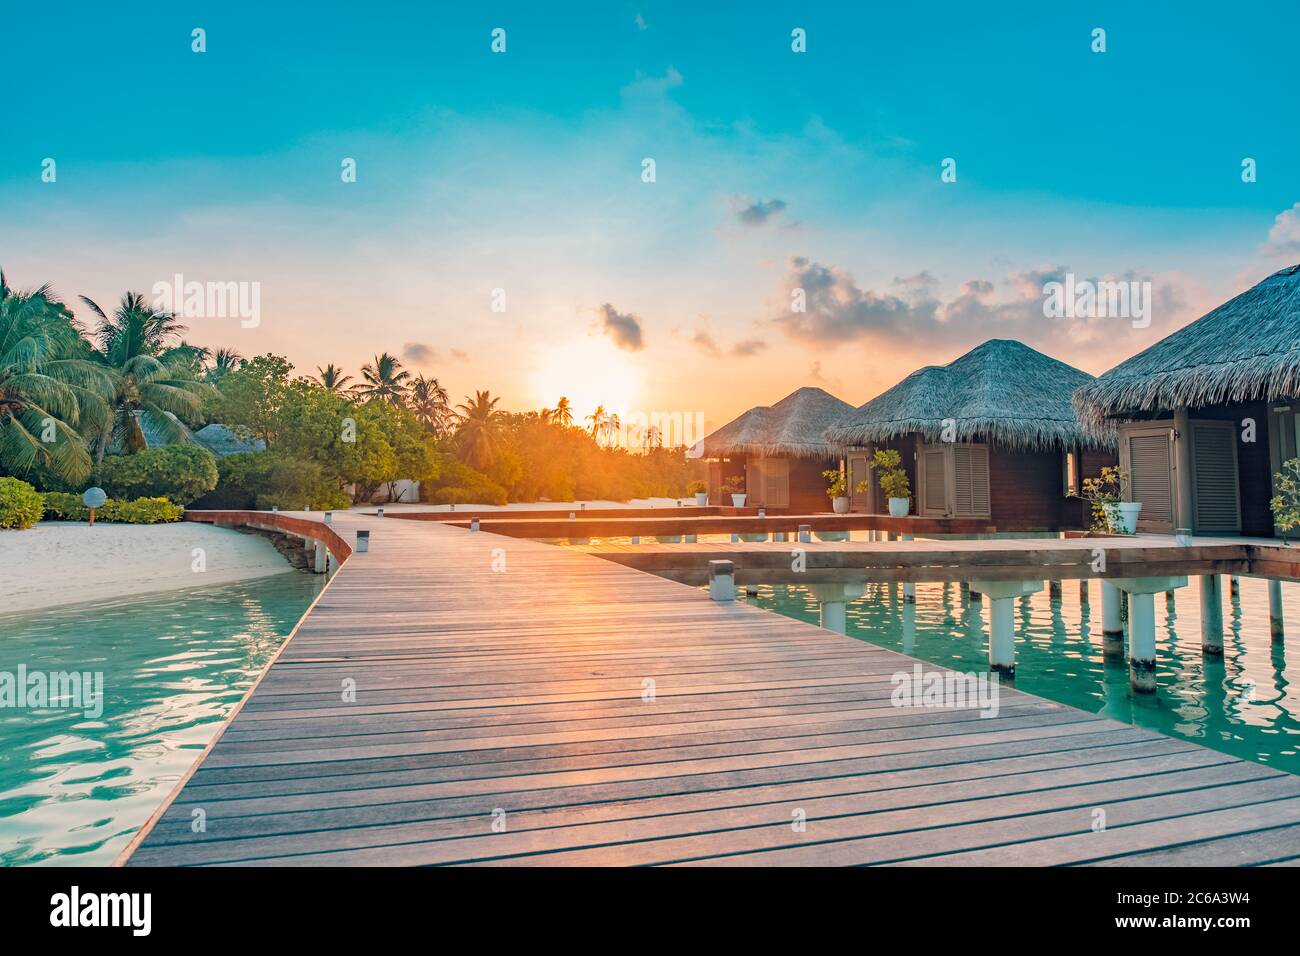 Tolle Reiselandschaft. Sonnenuntergang auf der Malediven Insel, Luxus Wasser Villen Resort und hölzerne Pier. Schöner Himmel und Wolken und Strand Hintergrund Stockfoto